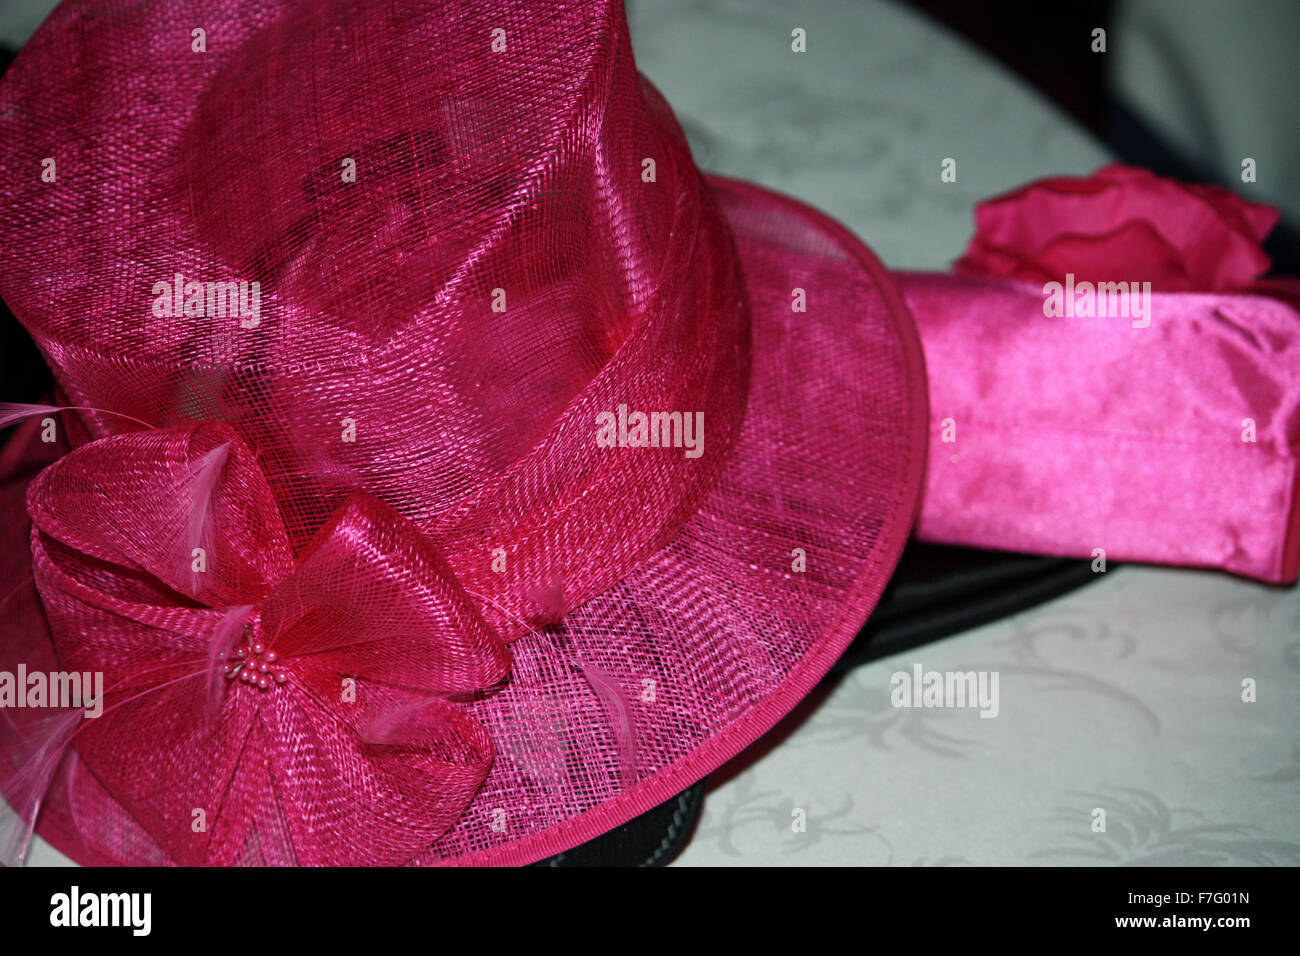 bright pink wedding hat